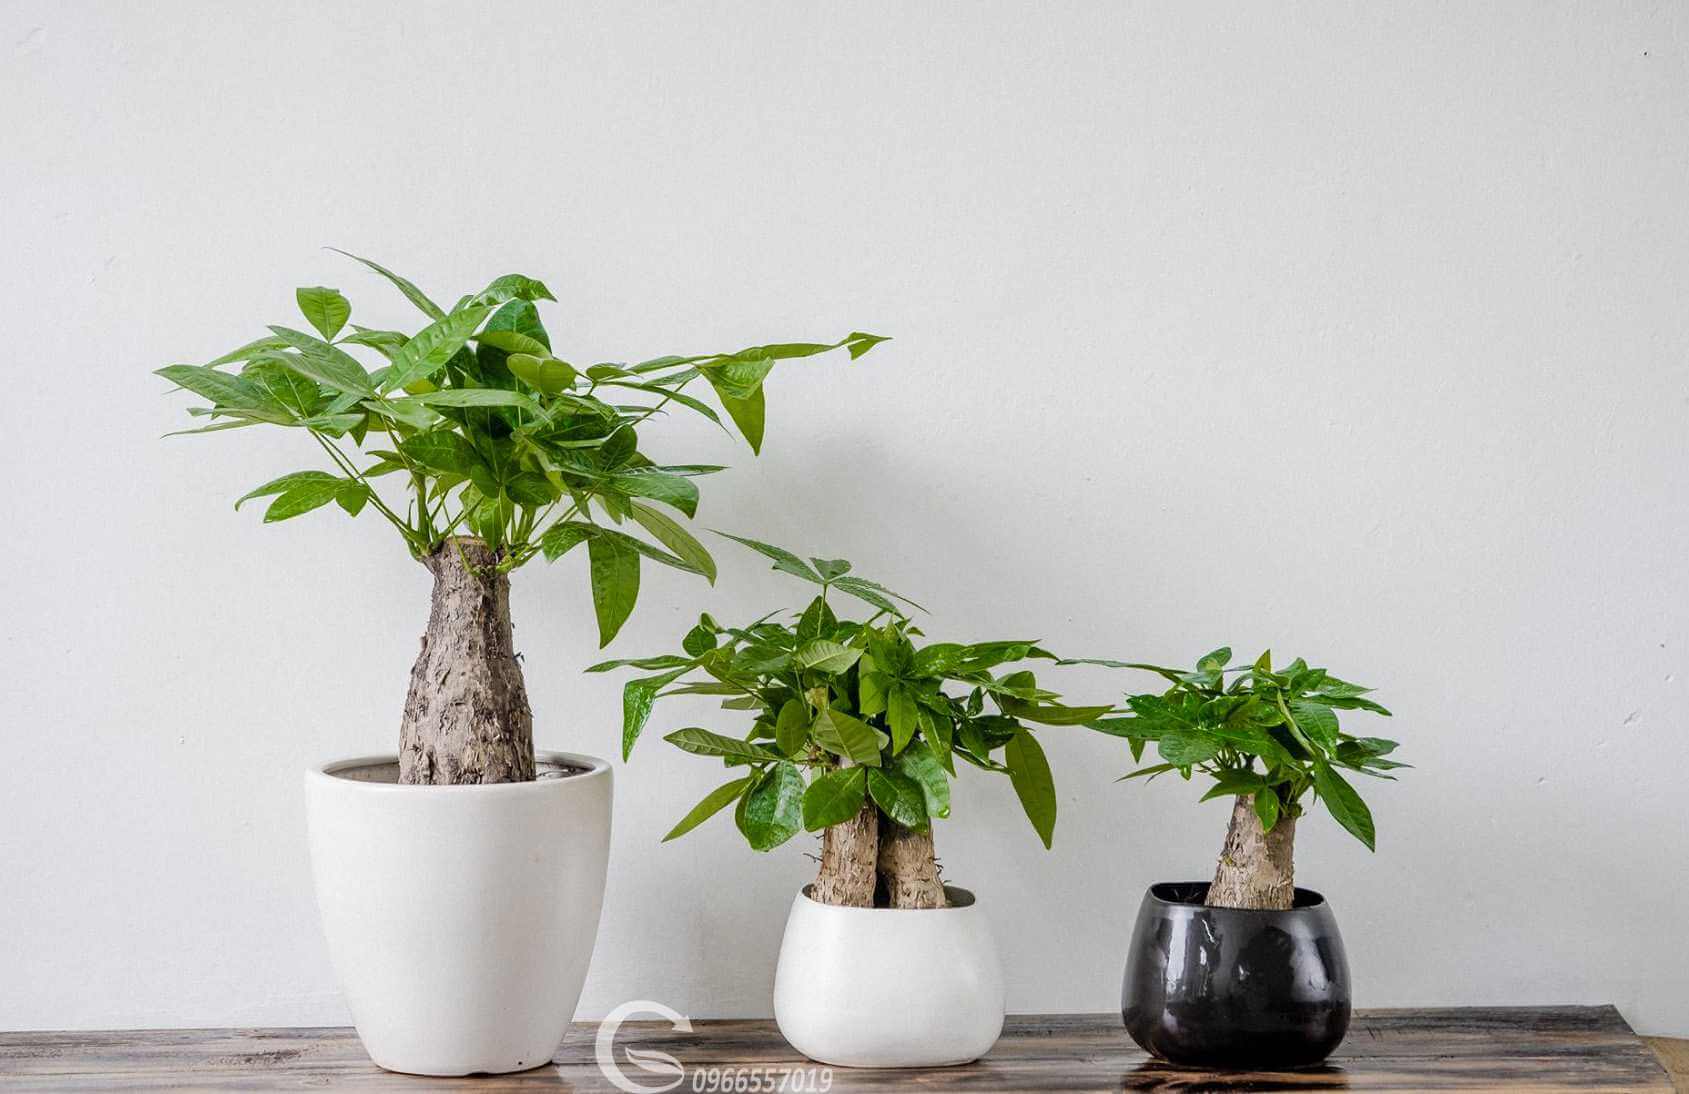 5 mẹo giúp bạn trồng cây phong thủy mang lại nhiều may mắn